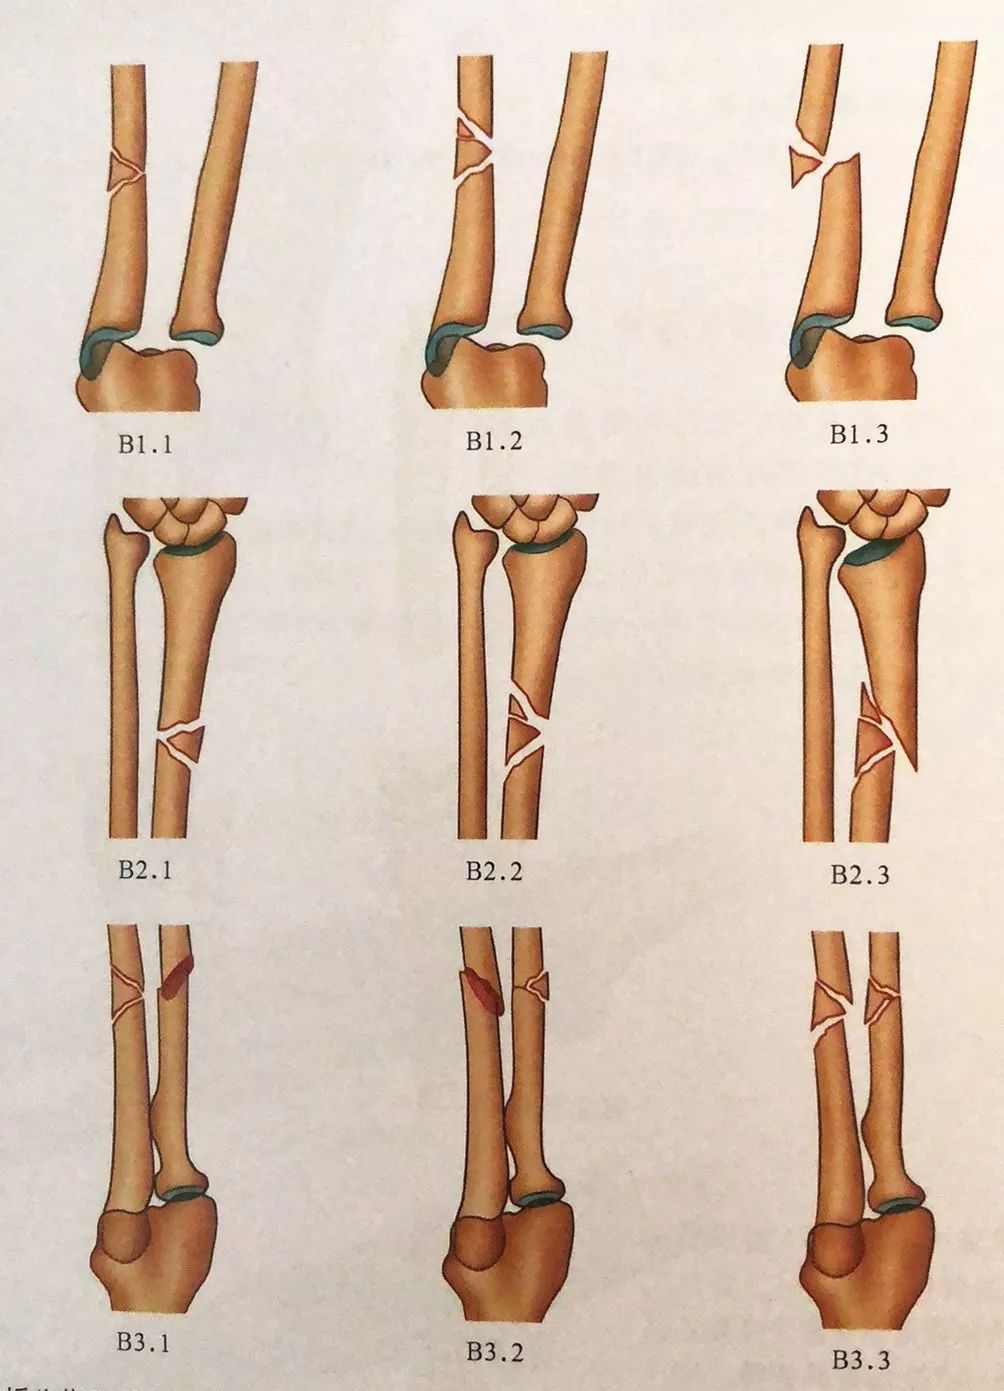 前臂双骨折解剖图片